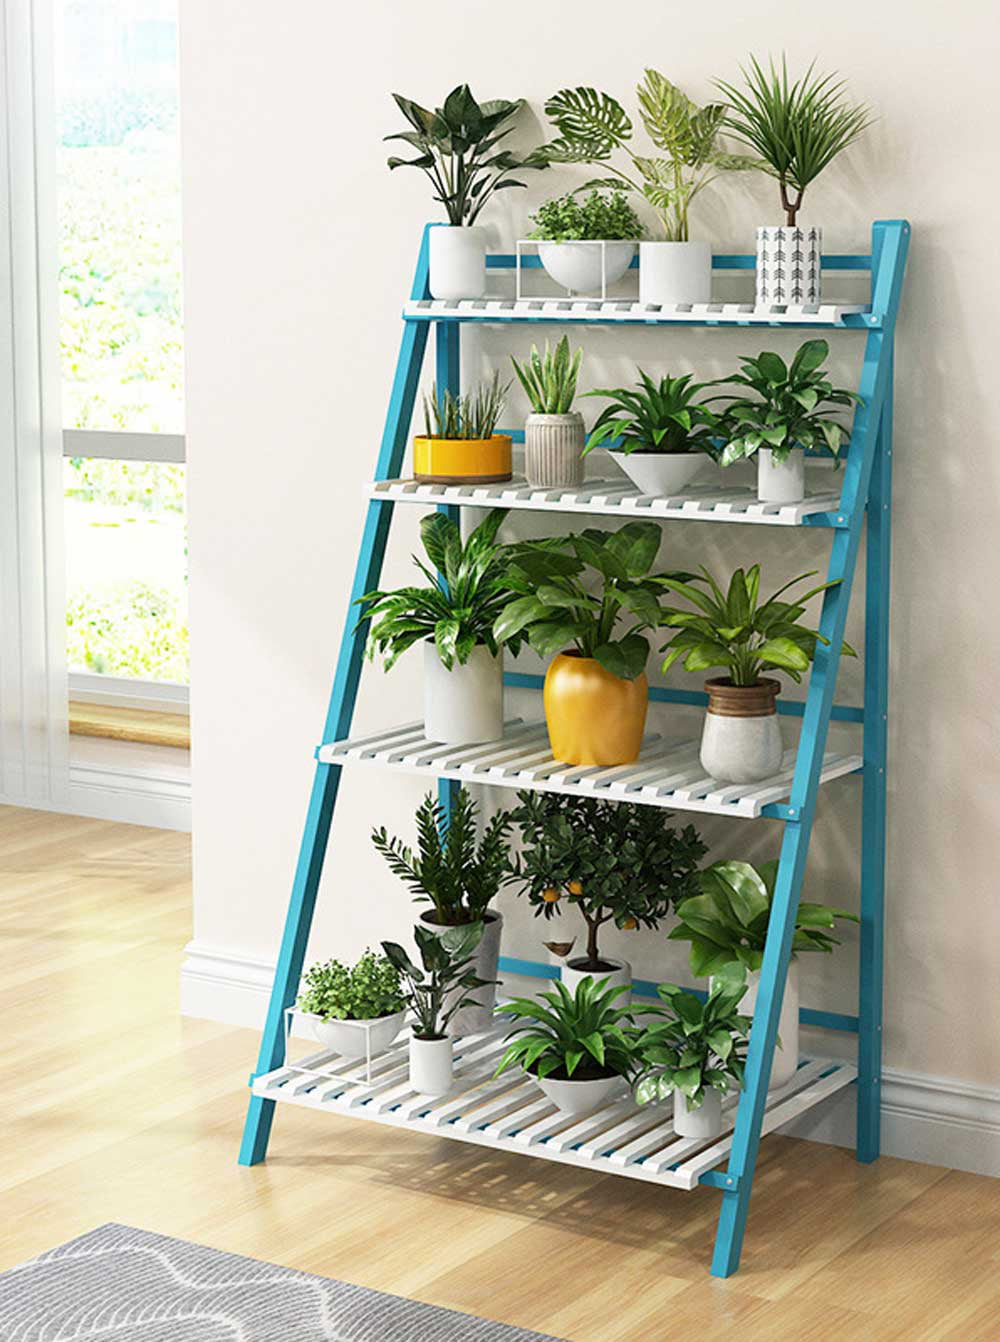 Details about   Hot 45" Foldable Ladder Shelf Plant Stand Indoor Flower Pot Display Shelf 4 Tier 